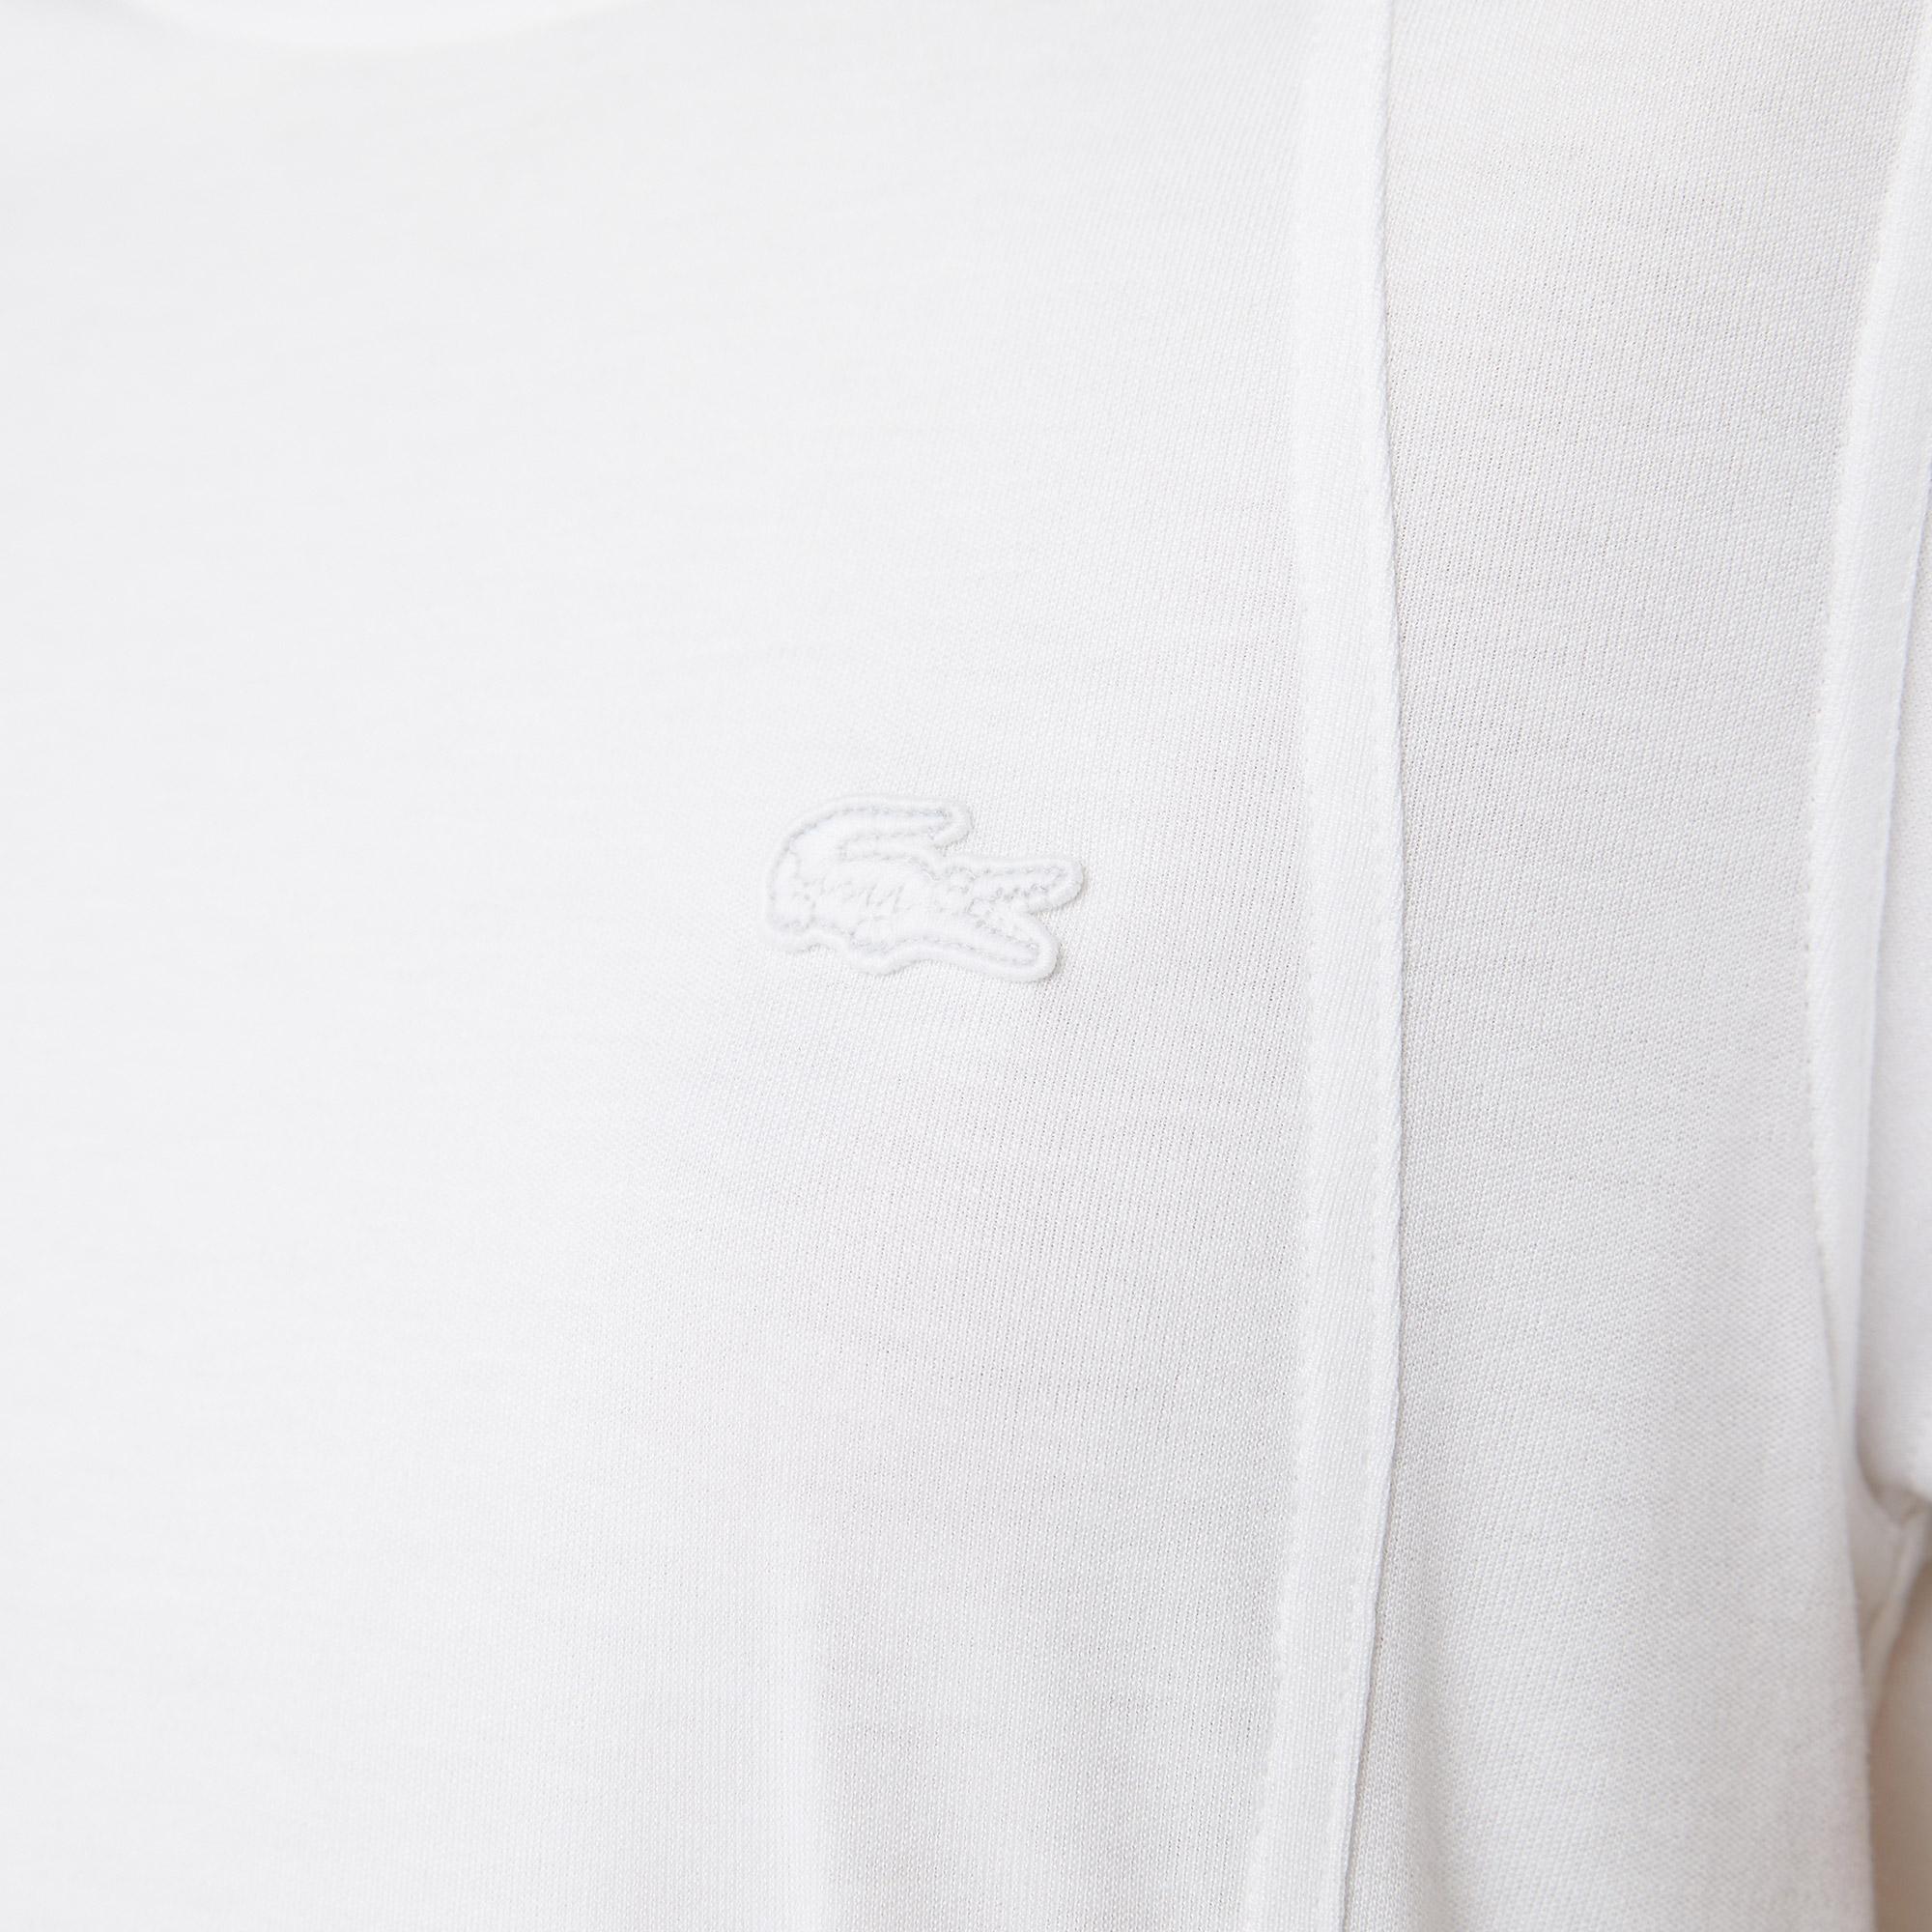 Lacoste Kadın Relaxed Fit Kayık Yaka Beyaz T-shirt. 7